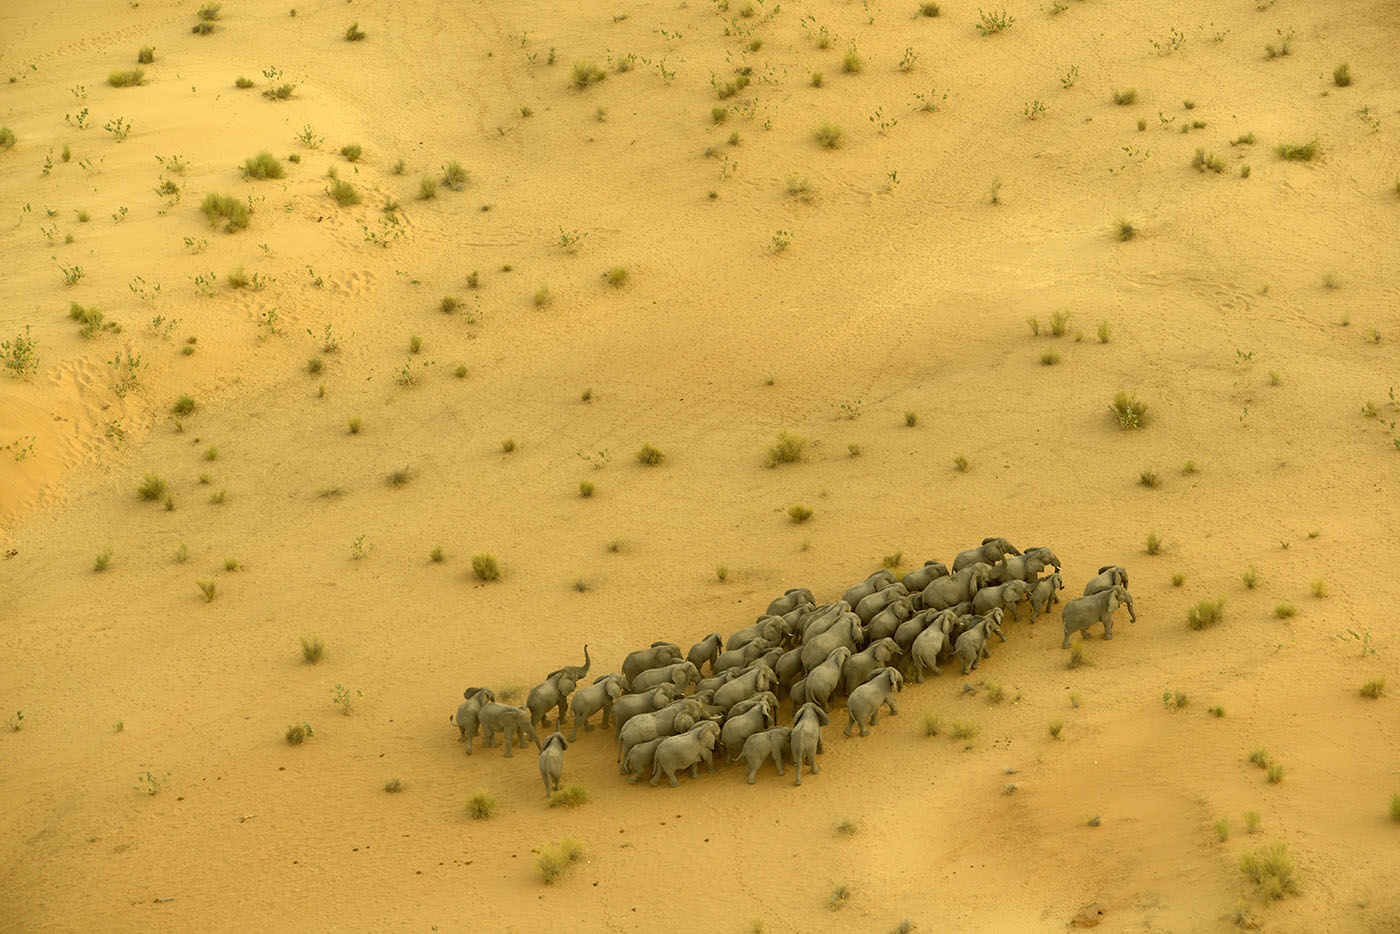 yellow savannah, aerial view of herd of elephants